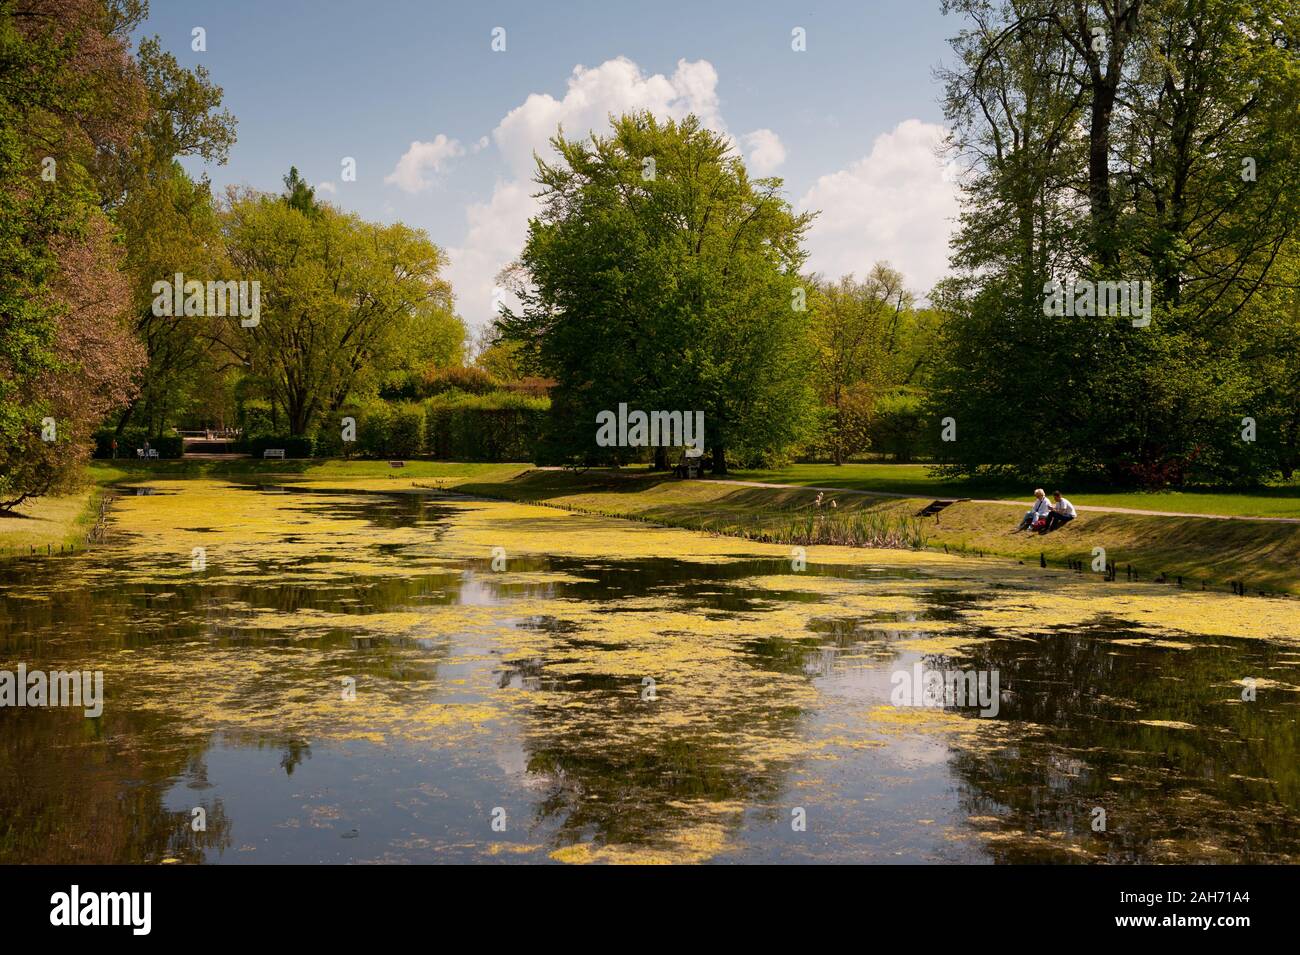 Les touristes de s'asseoir près de l'étang de jardin à Nieborów Park au printemps, vue sur le jardin d'ornement en Pologne, l'Europe, le temps libre et naturel bucolique Banque D'Images